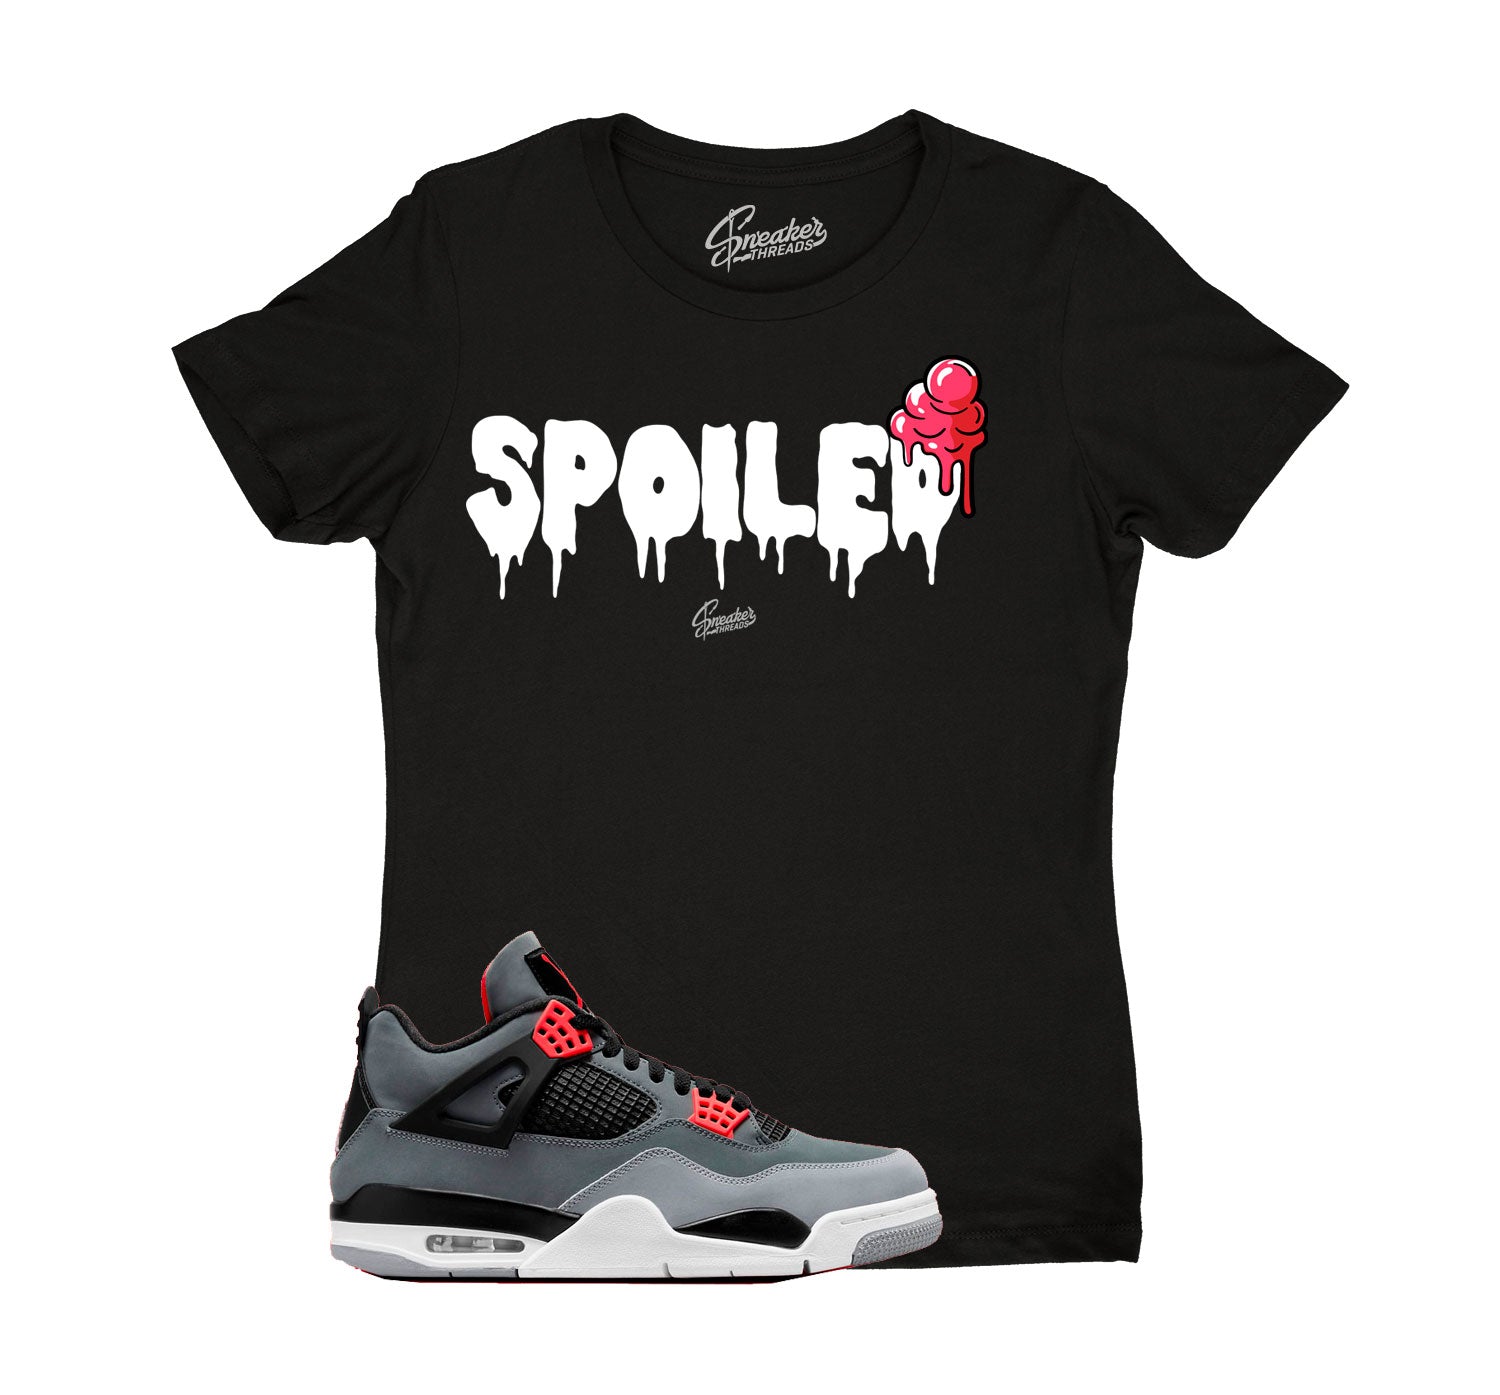 Ladies Jordan 4 infrared sneaker tees